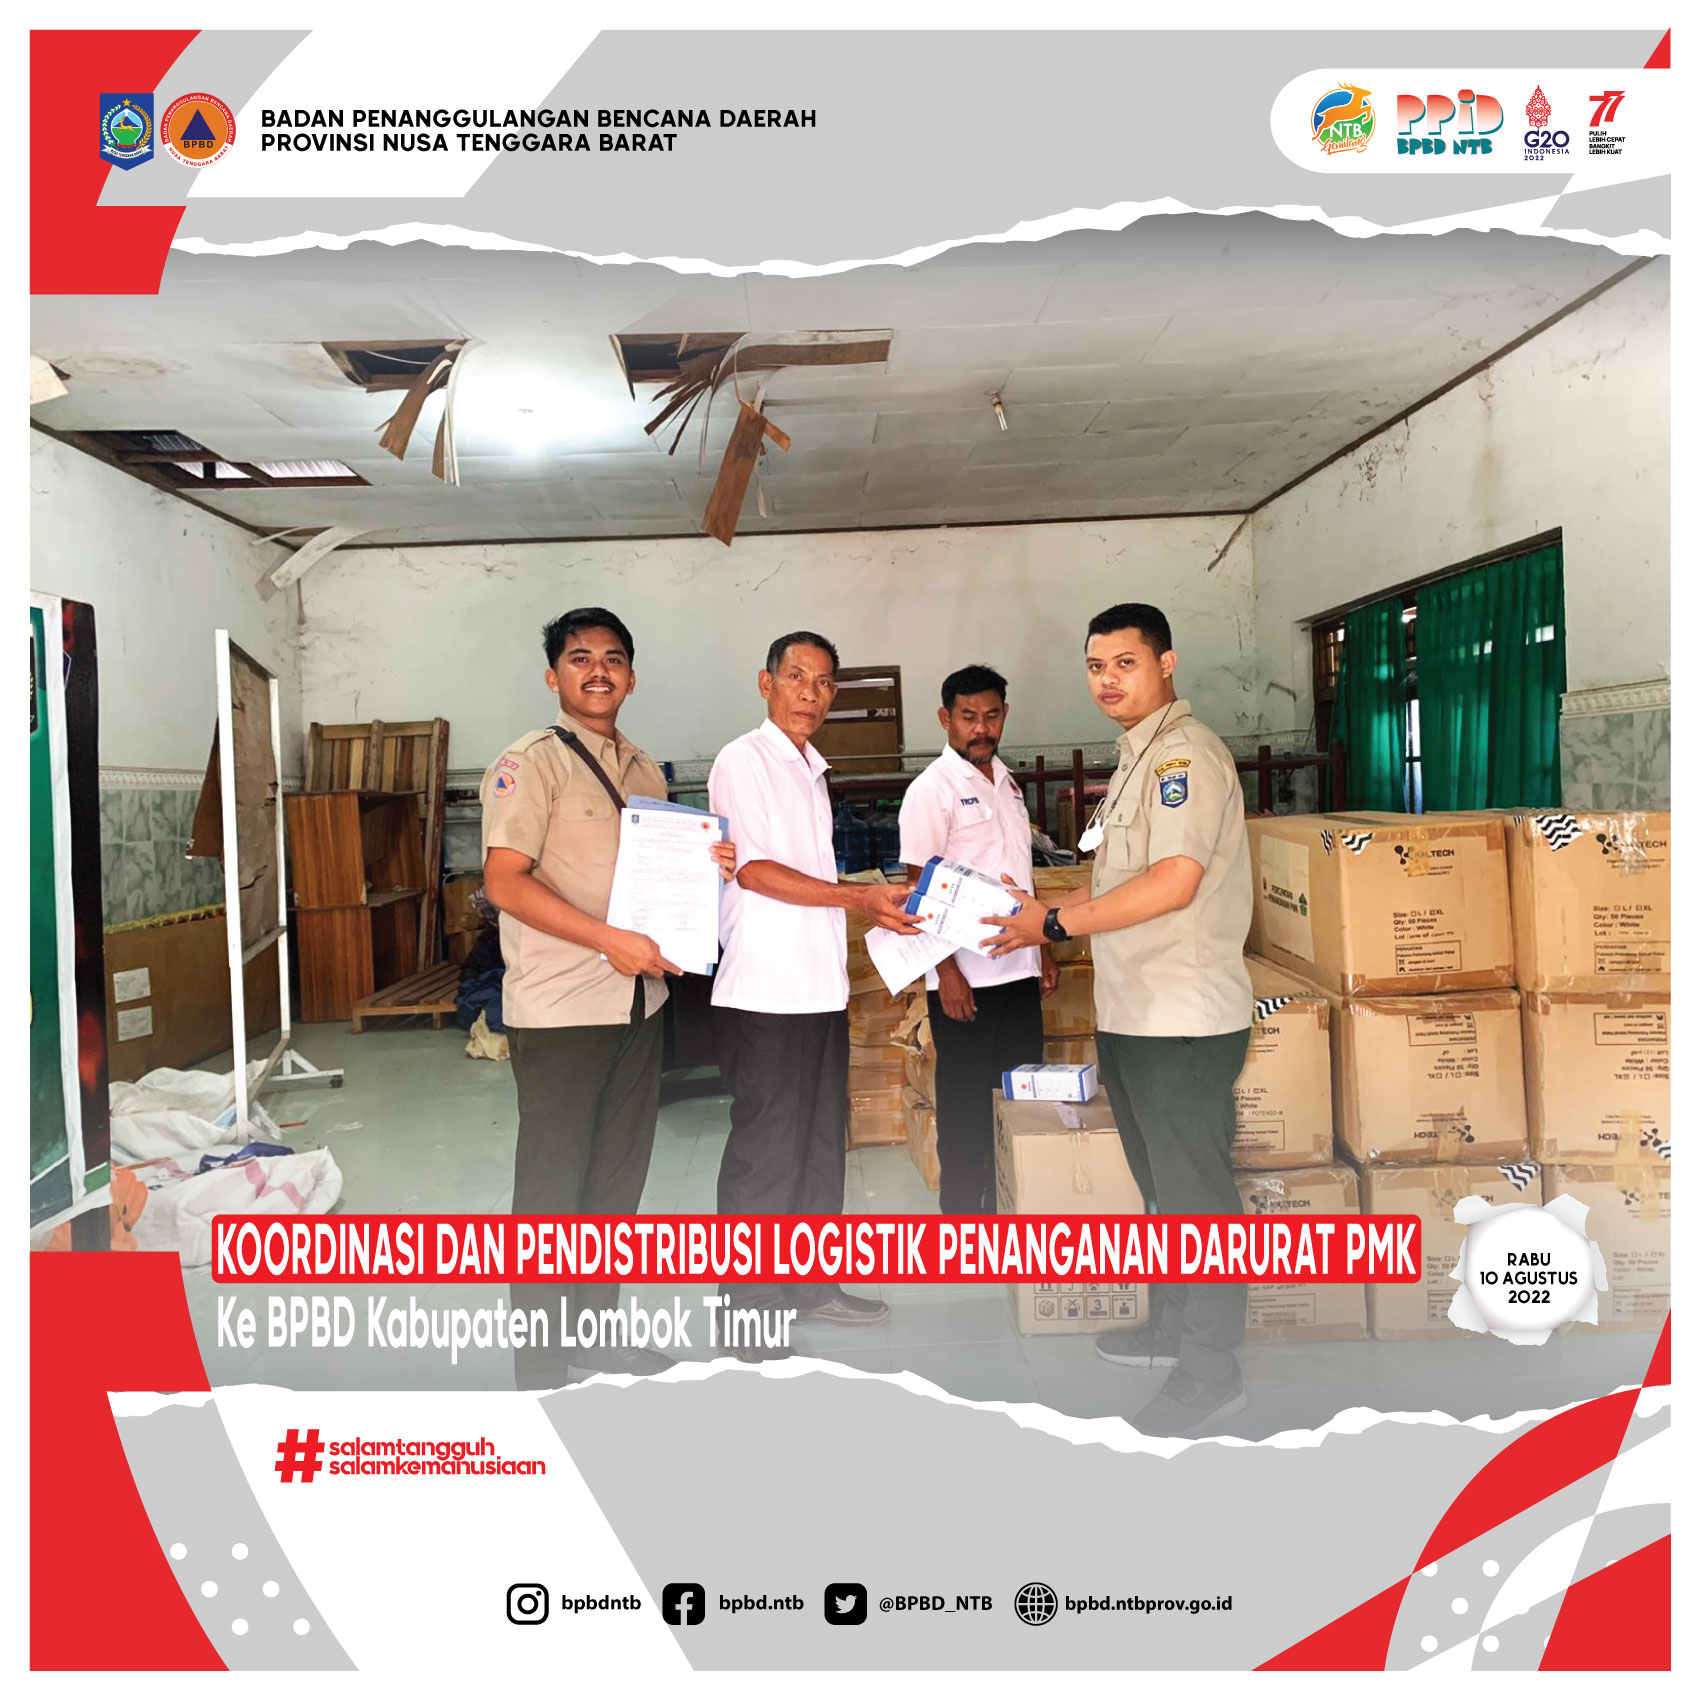 Koordinasi Dan Pendistribusian Logistik Penanganan Darurat PMK ke BPBD Kabupaten Lombok Timur (Rabu, 10 Agustus 2022)